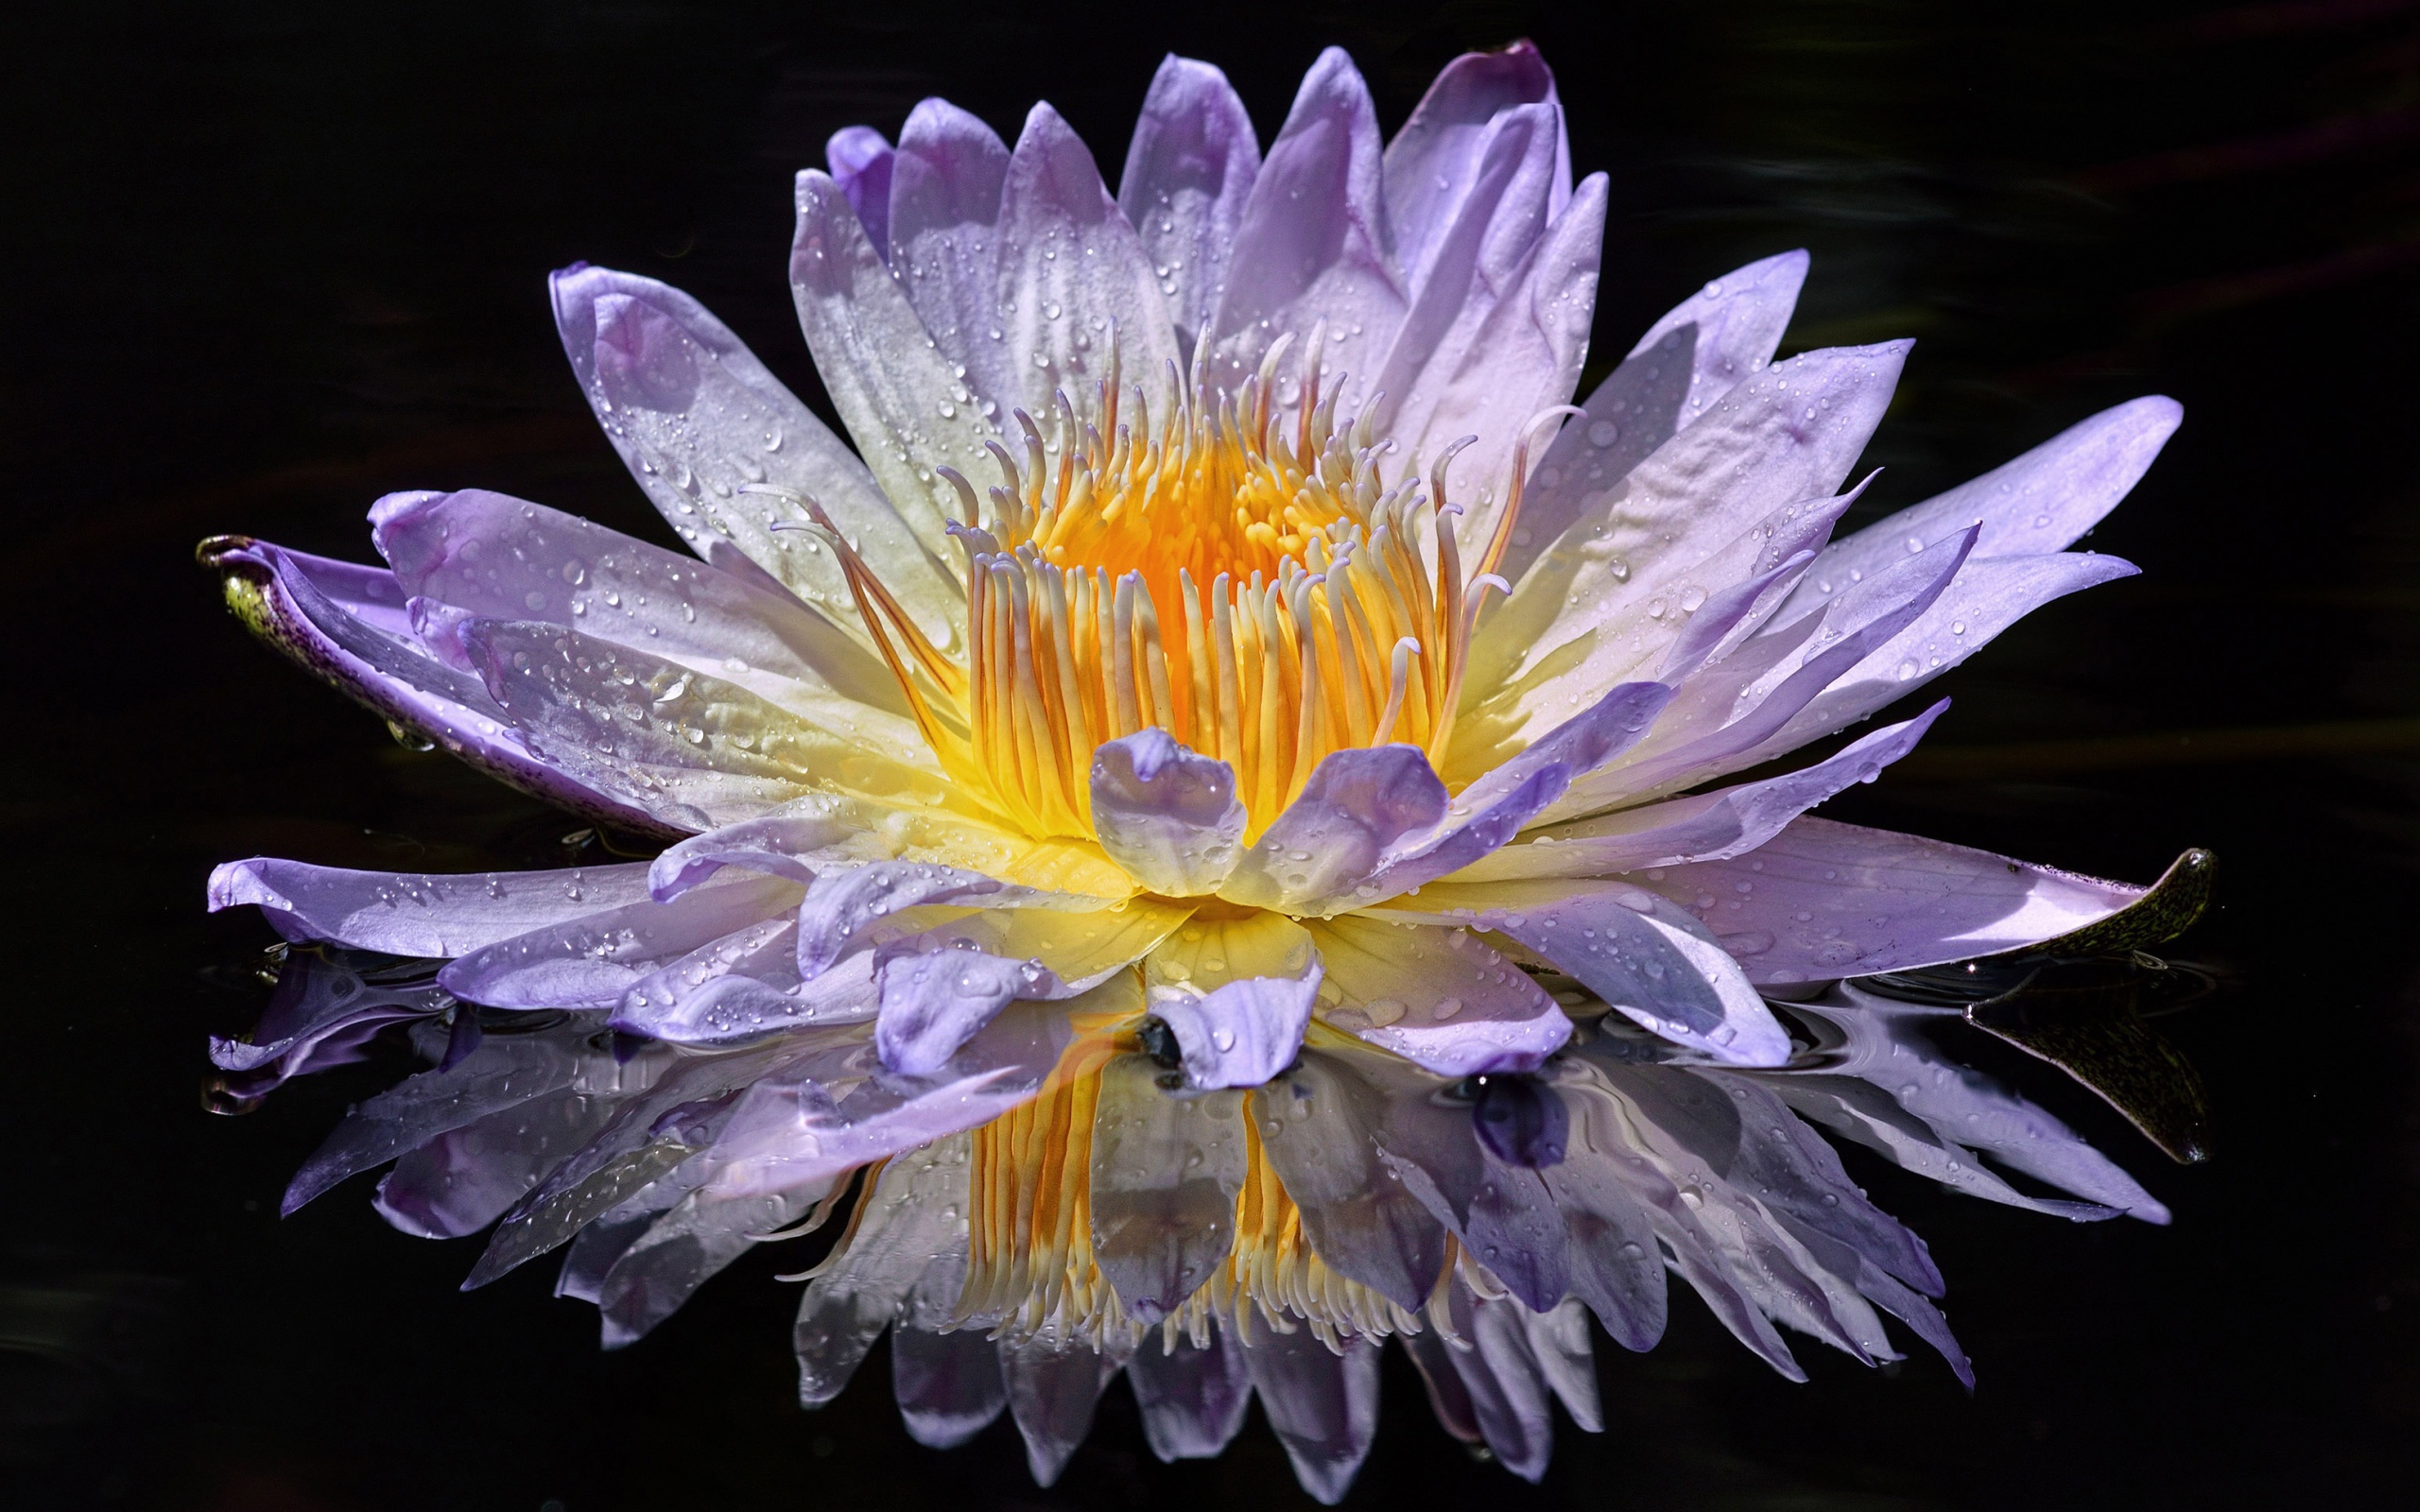 Purple lotus flower in the sun in water